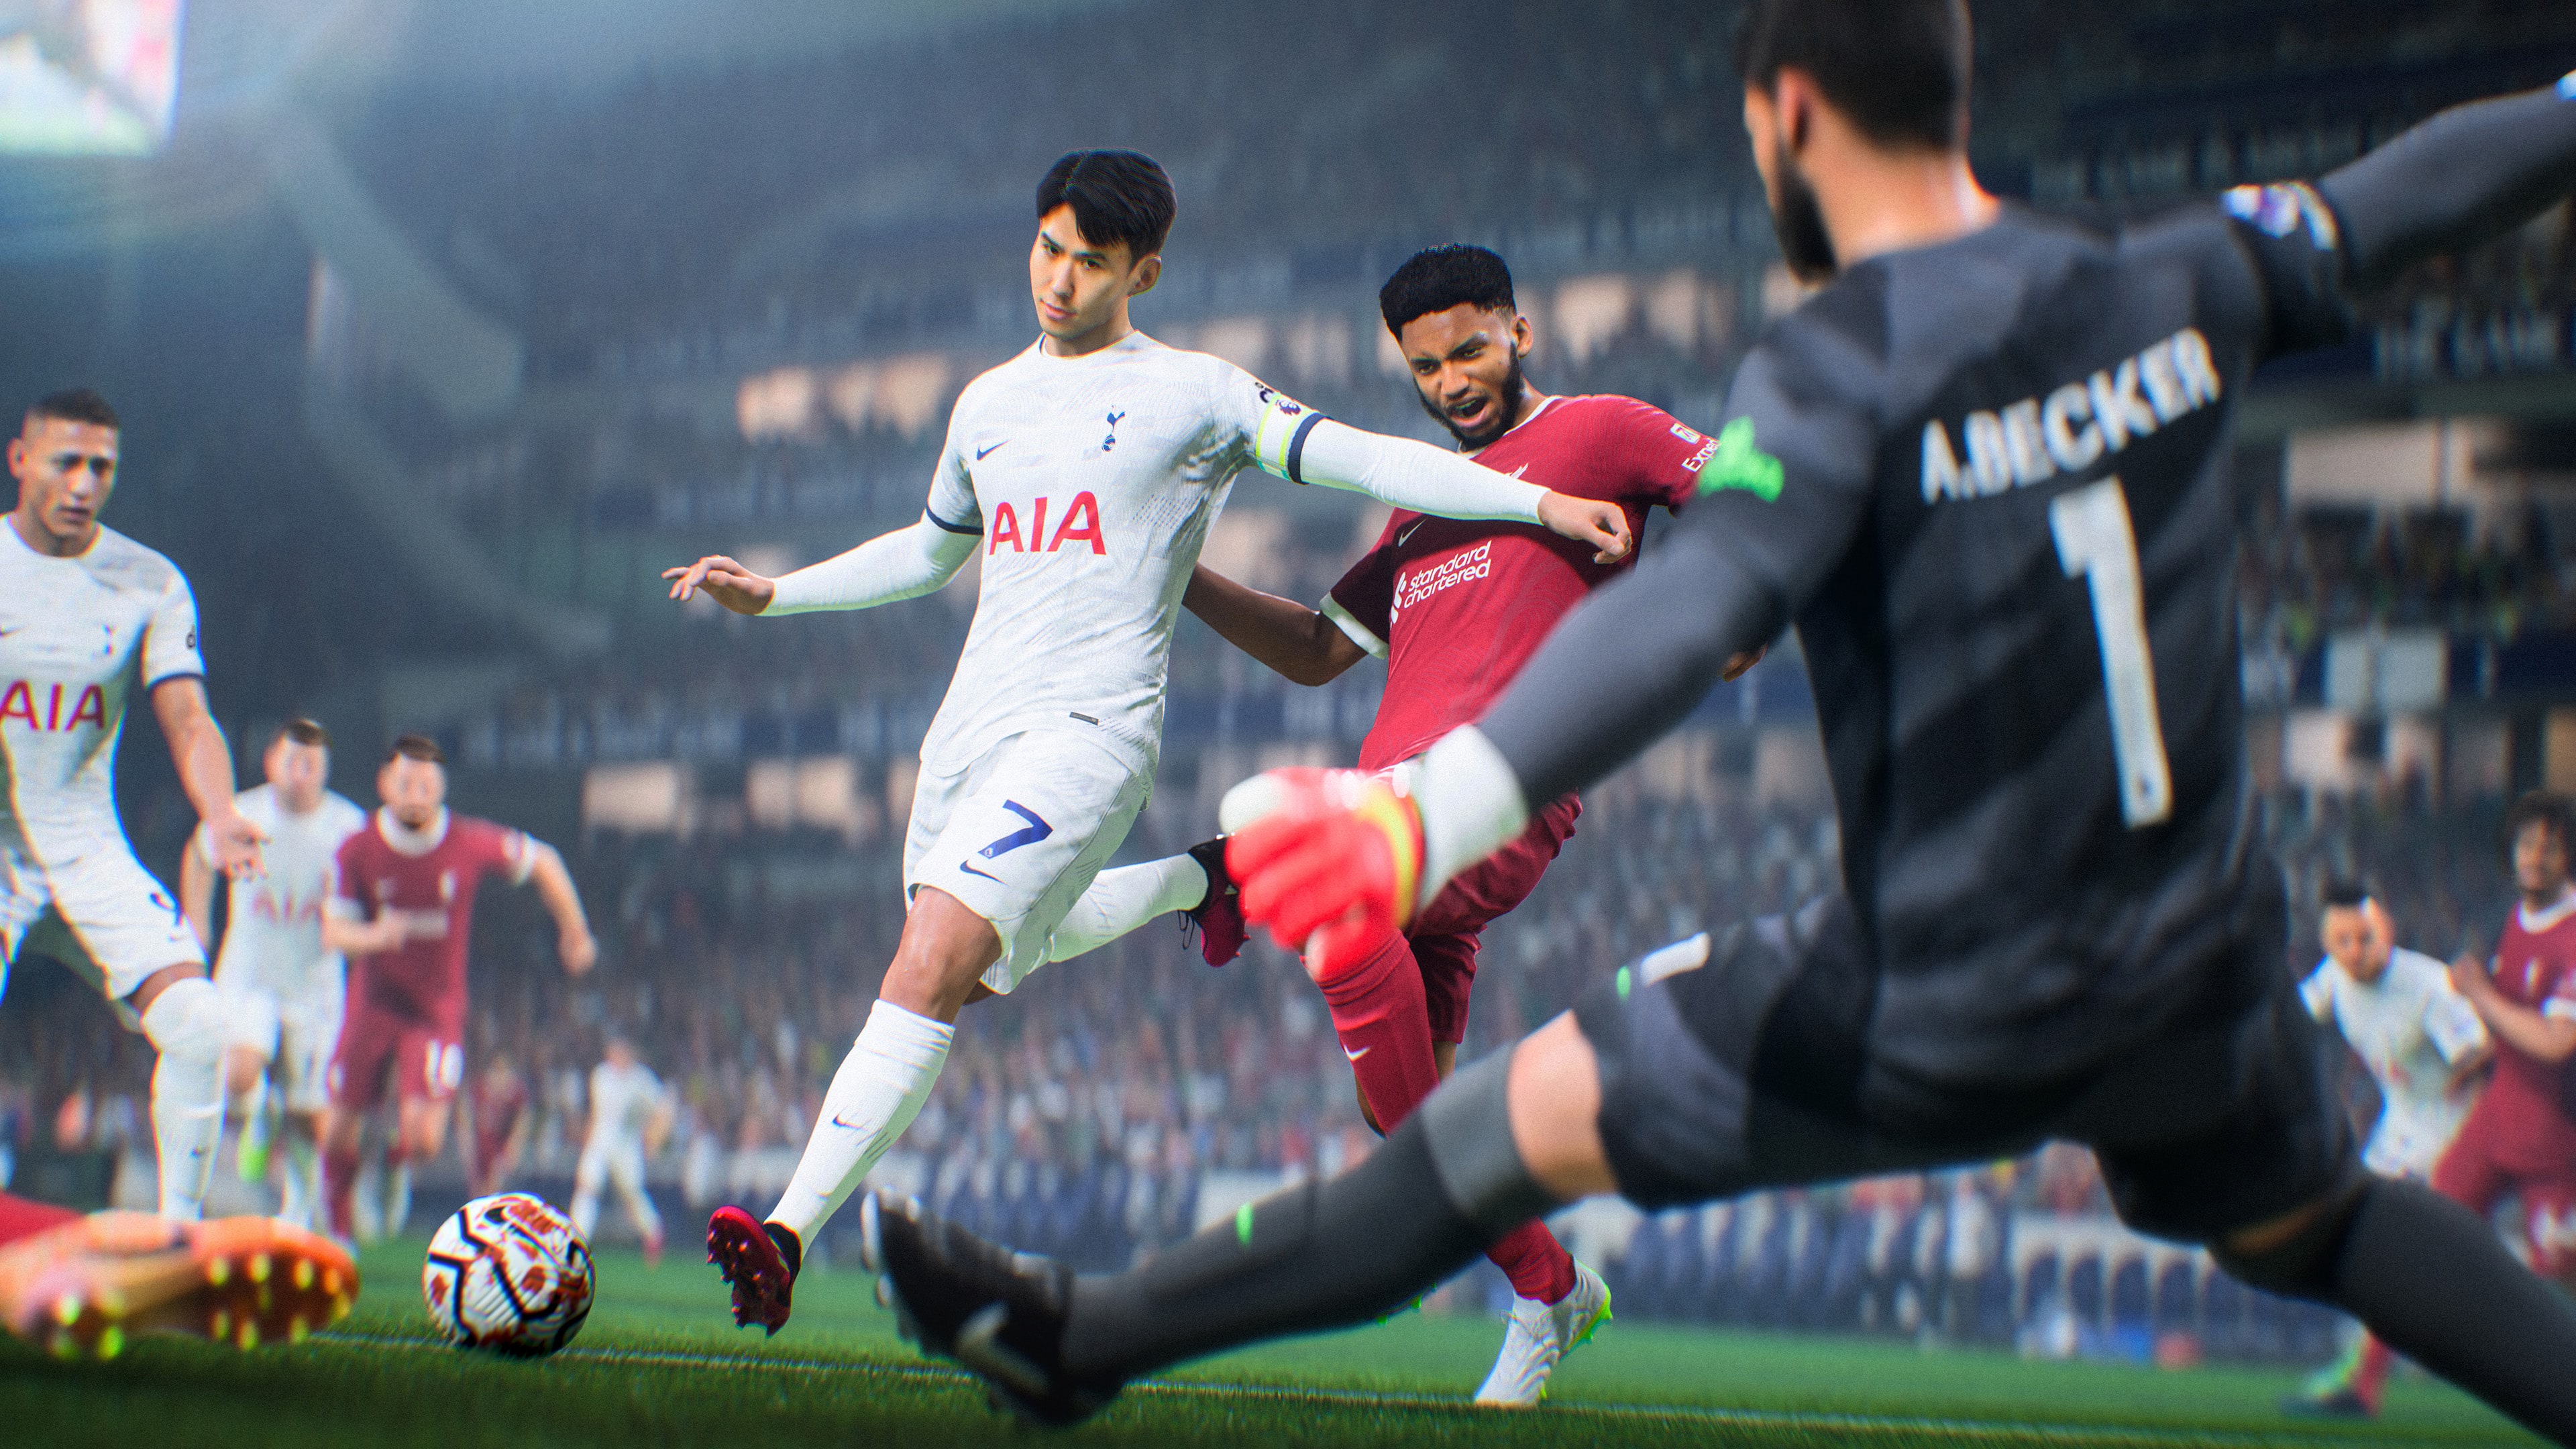 EA Sports FC 24 Edición Estándar para PlayStation 4